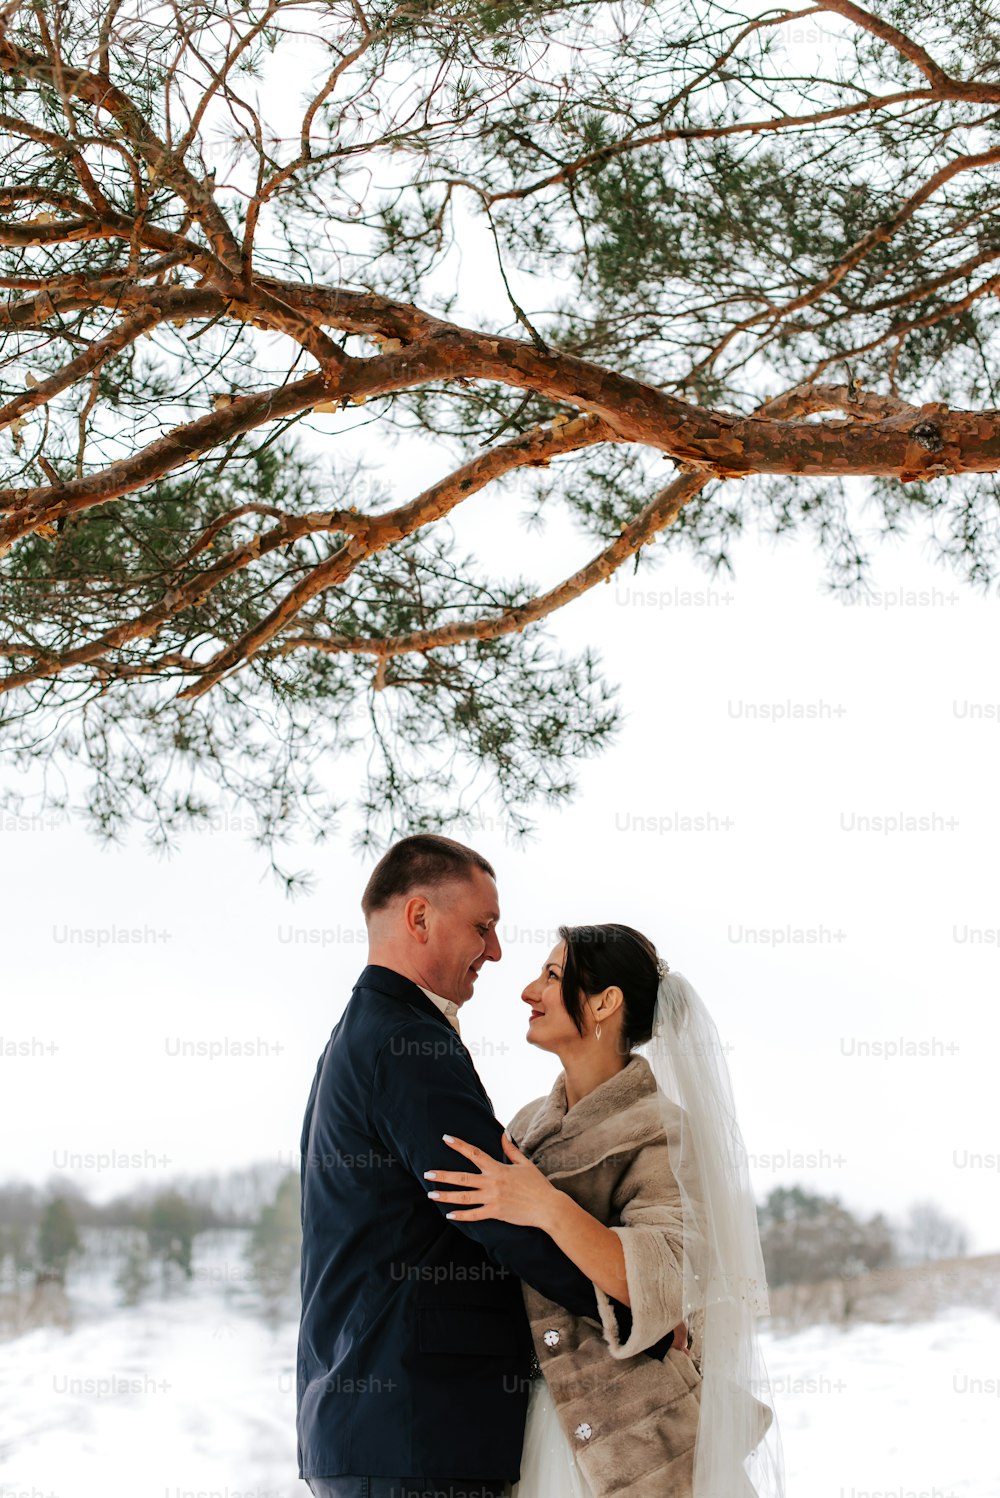 Braut und Bräutigam stehen unter einem Baum im Schnee